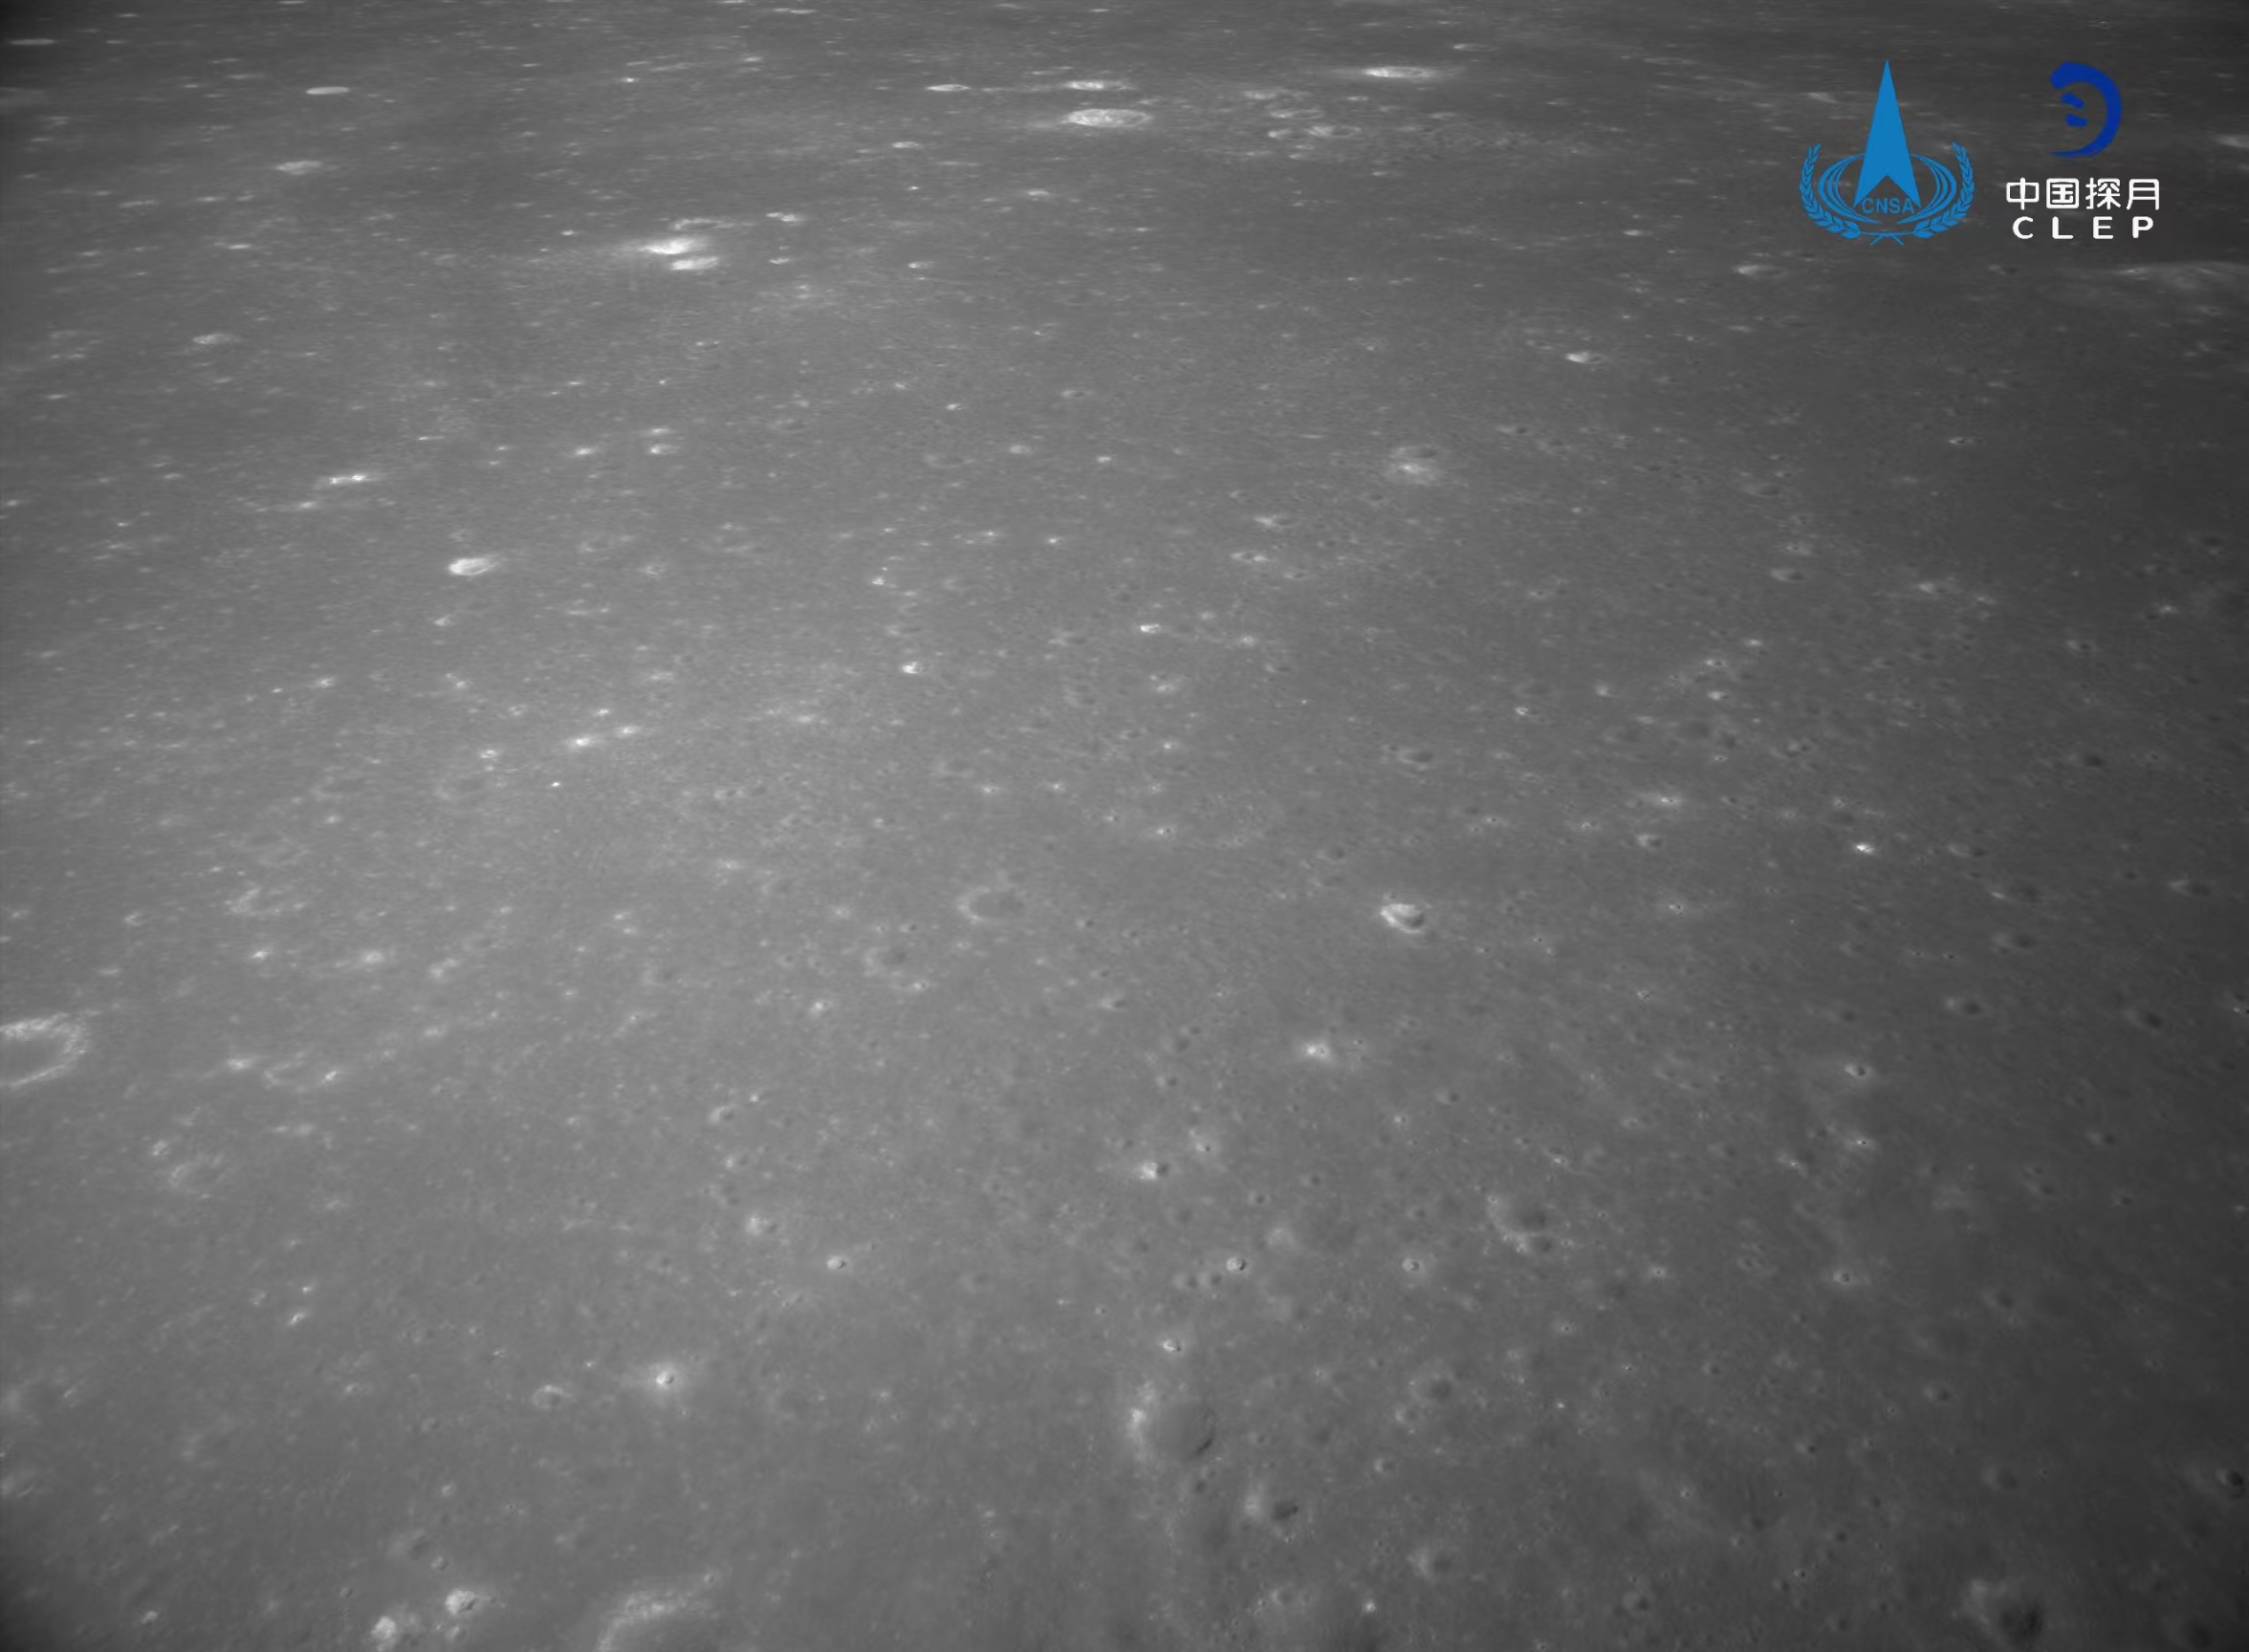 该图由降落相机在降落过程中拍摄	，发布</p>嫦娥图像显示拍摄的号拍月背区域分布有大量亮色环形坑。